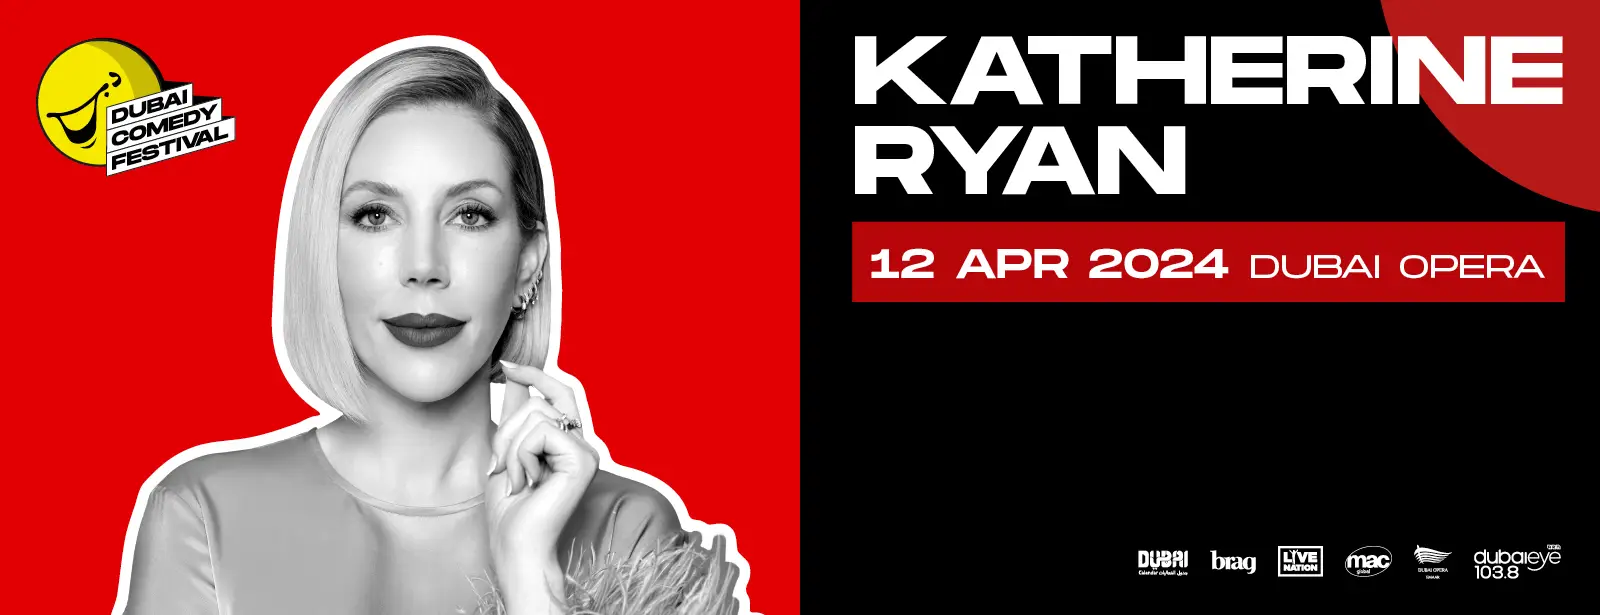 Dubai Comedy Festival presents Katherine Ryan at Dubai Opera || Wow-Emirates